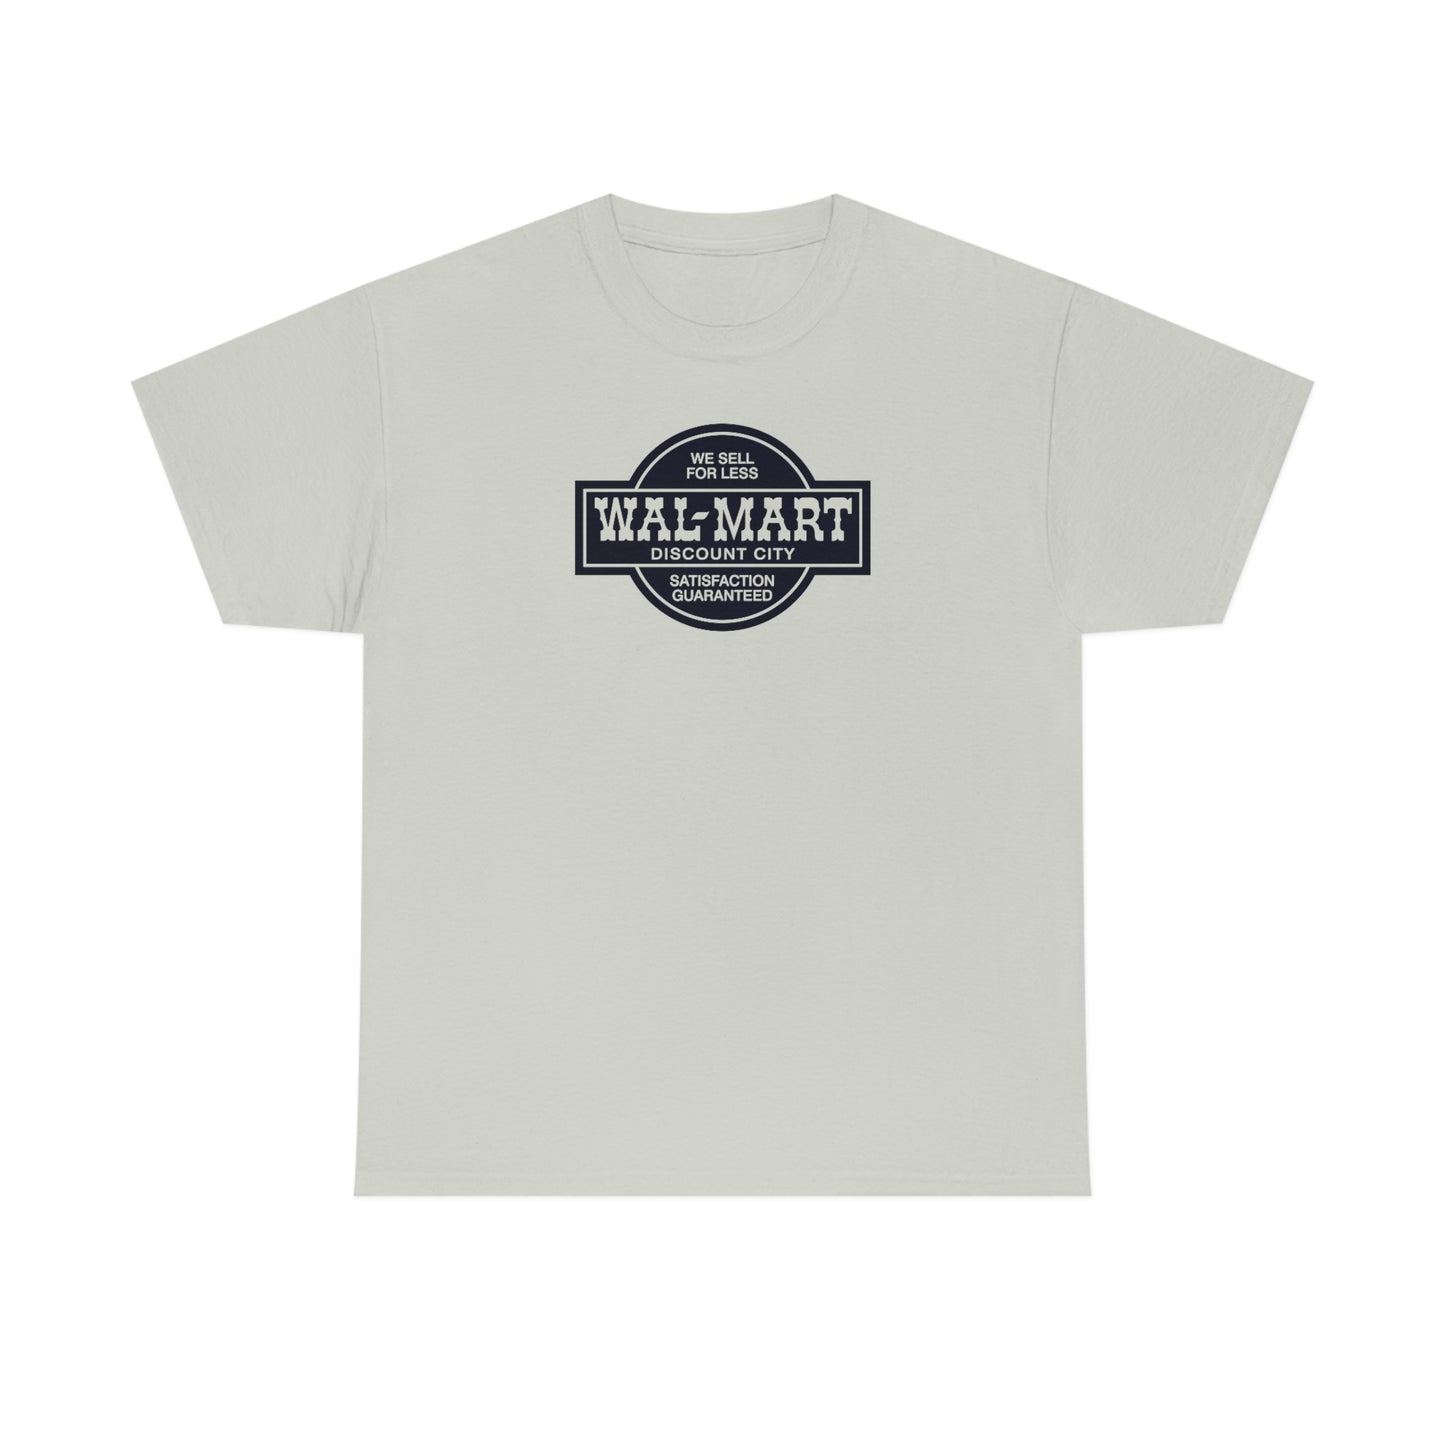 Wal•Mart Discount City T-Shirt